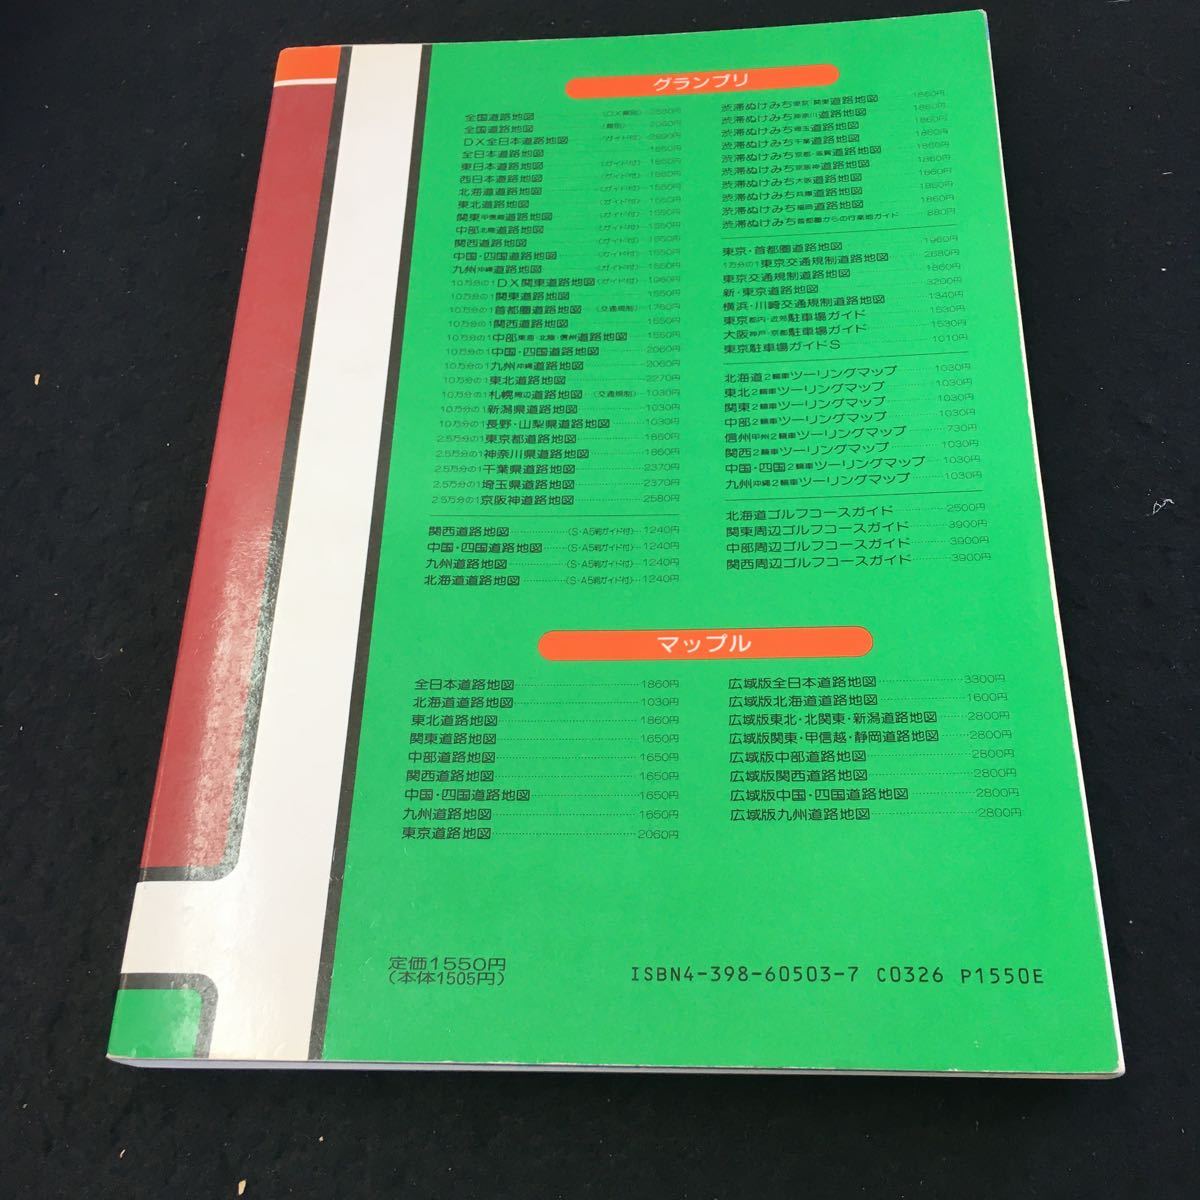 Y33-200e Aria карта Grand Prix ② Tohoku карта дорог 1:250000 новейший версия гид есть . документ фирма 1990 год выпуск Tohoku *. запись .. три суша ... . и т.п. 